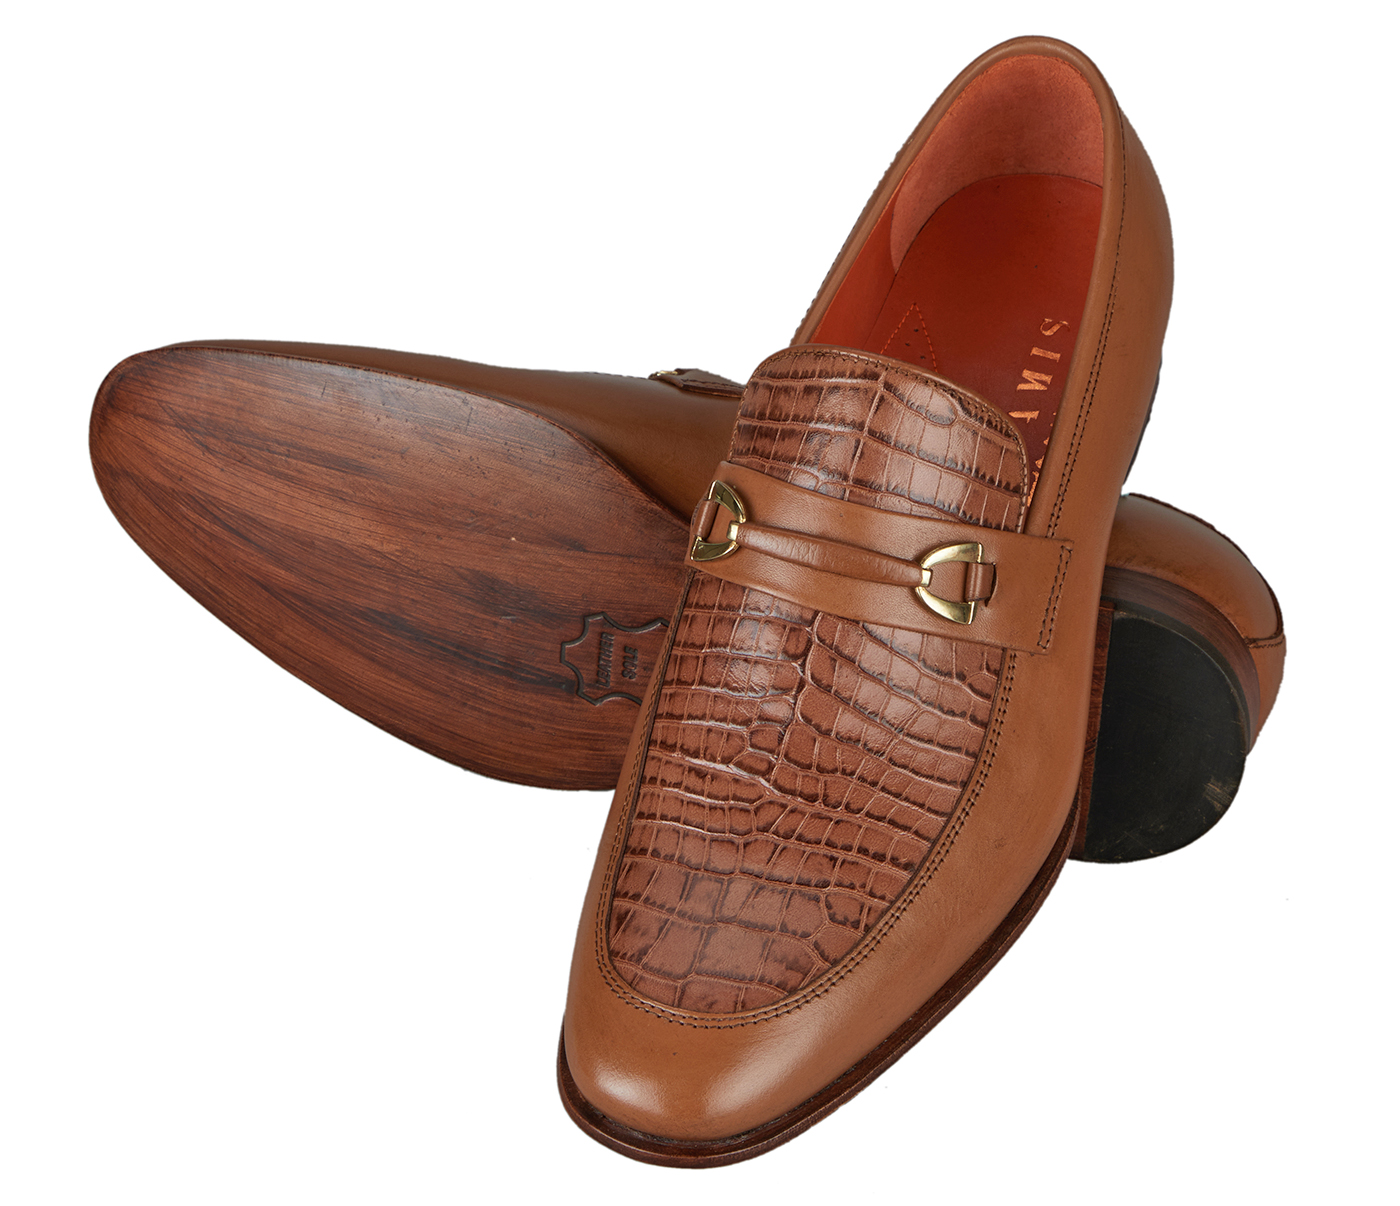 PF52-Adamis Pure Leather Footwear For Men- - Tan